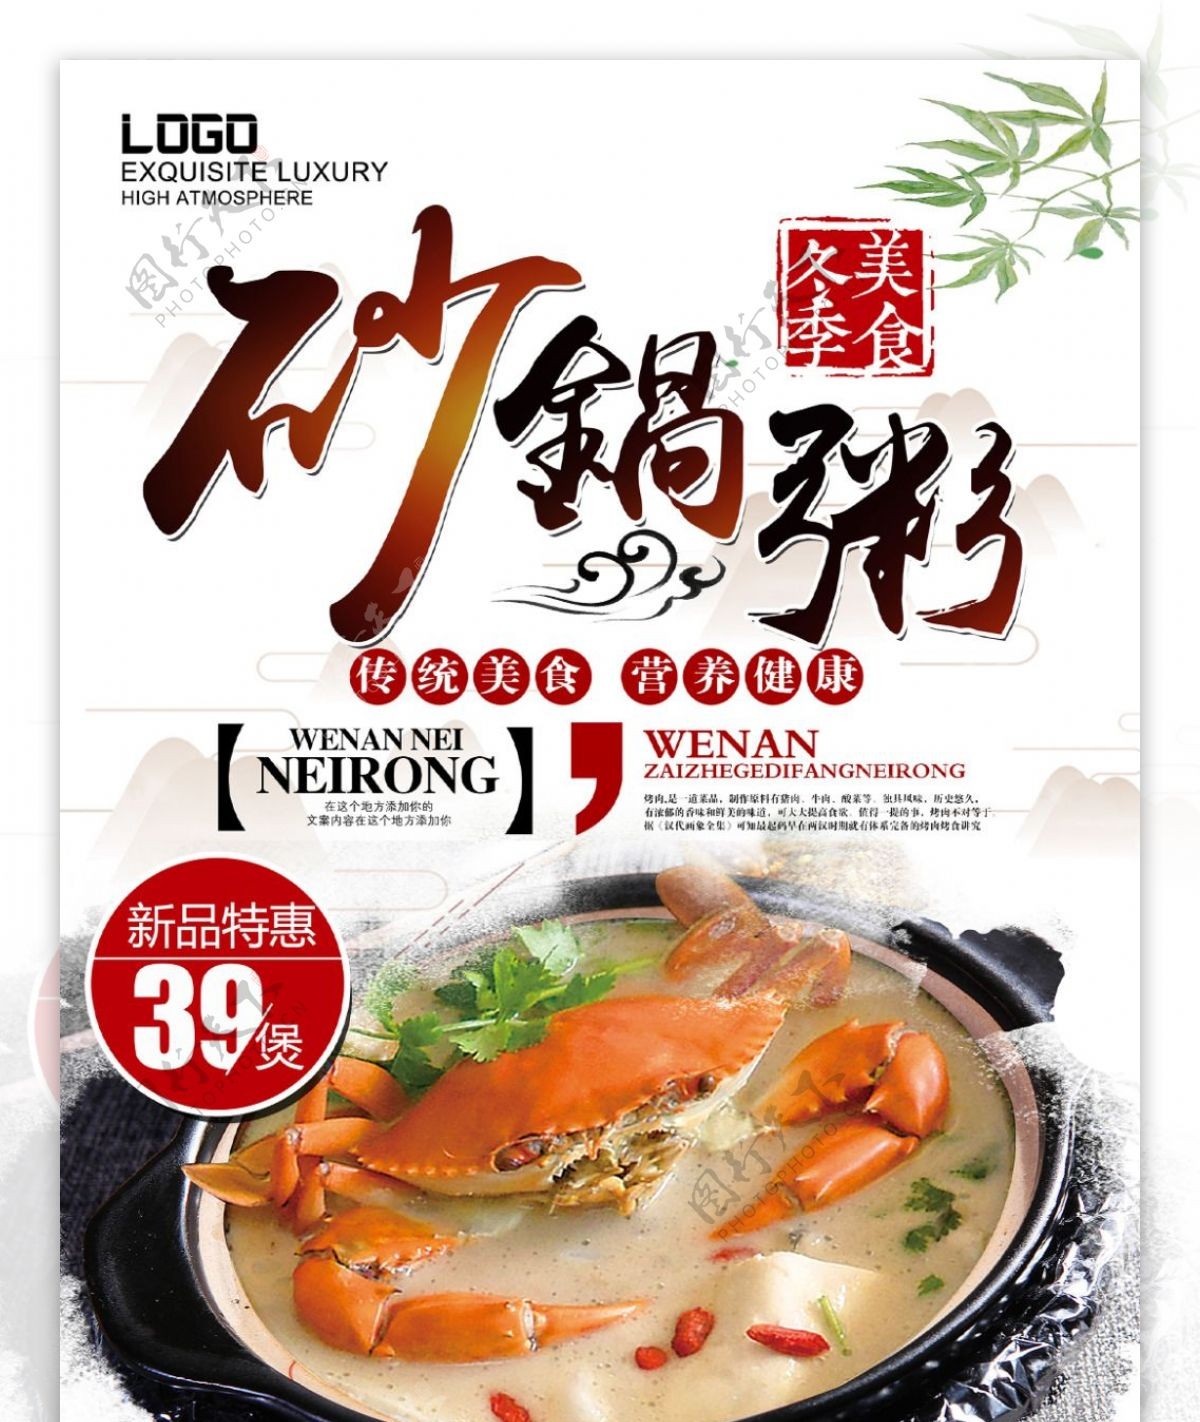 潮汕砂锅粥冬季美食大排档特色菜单海报